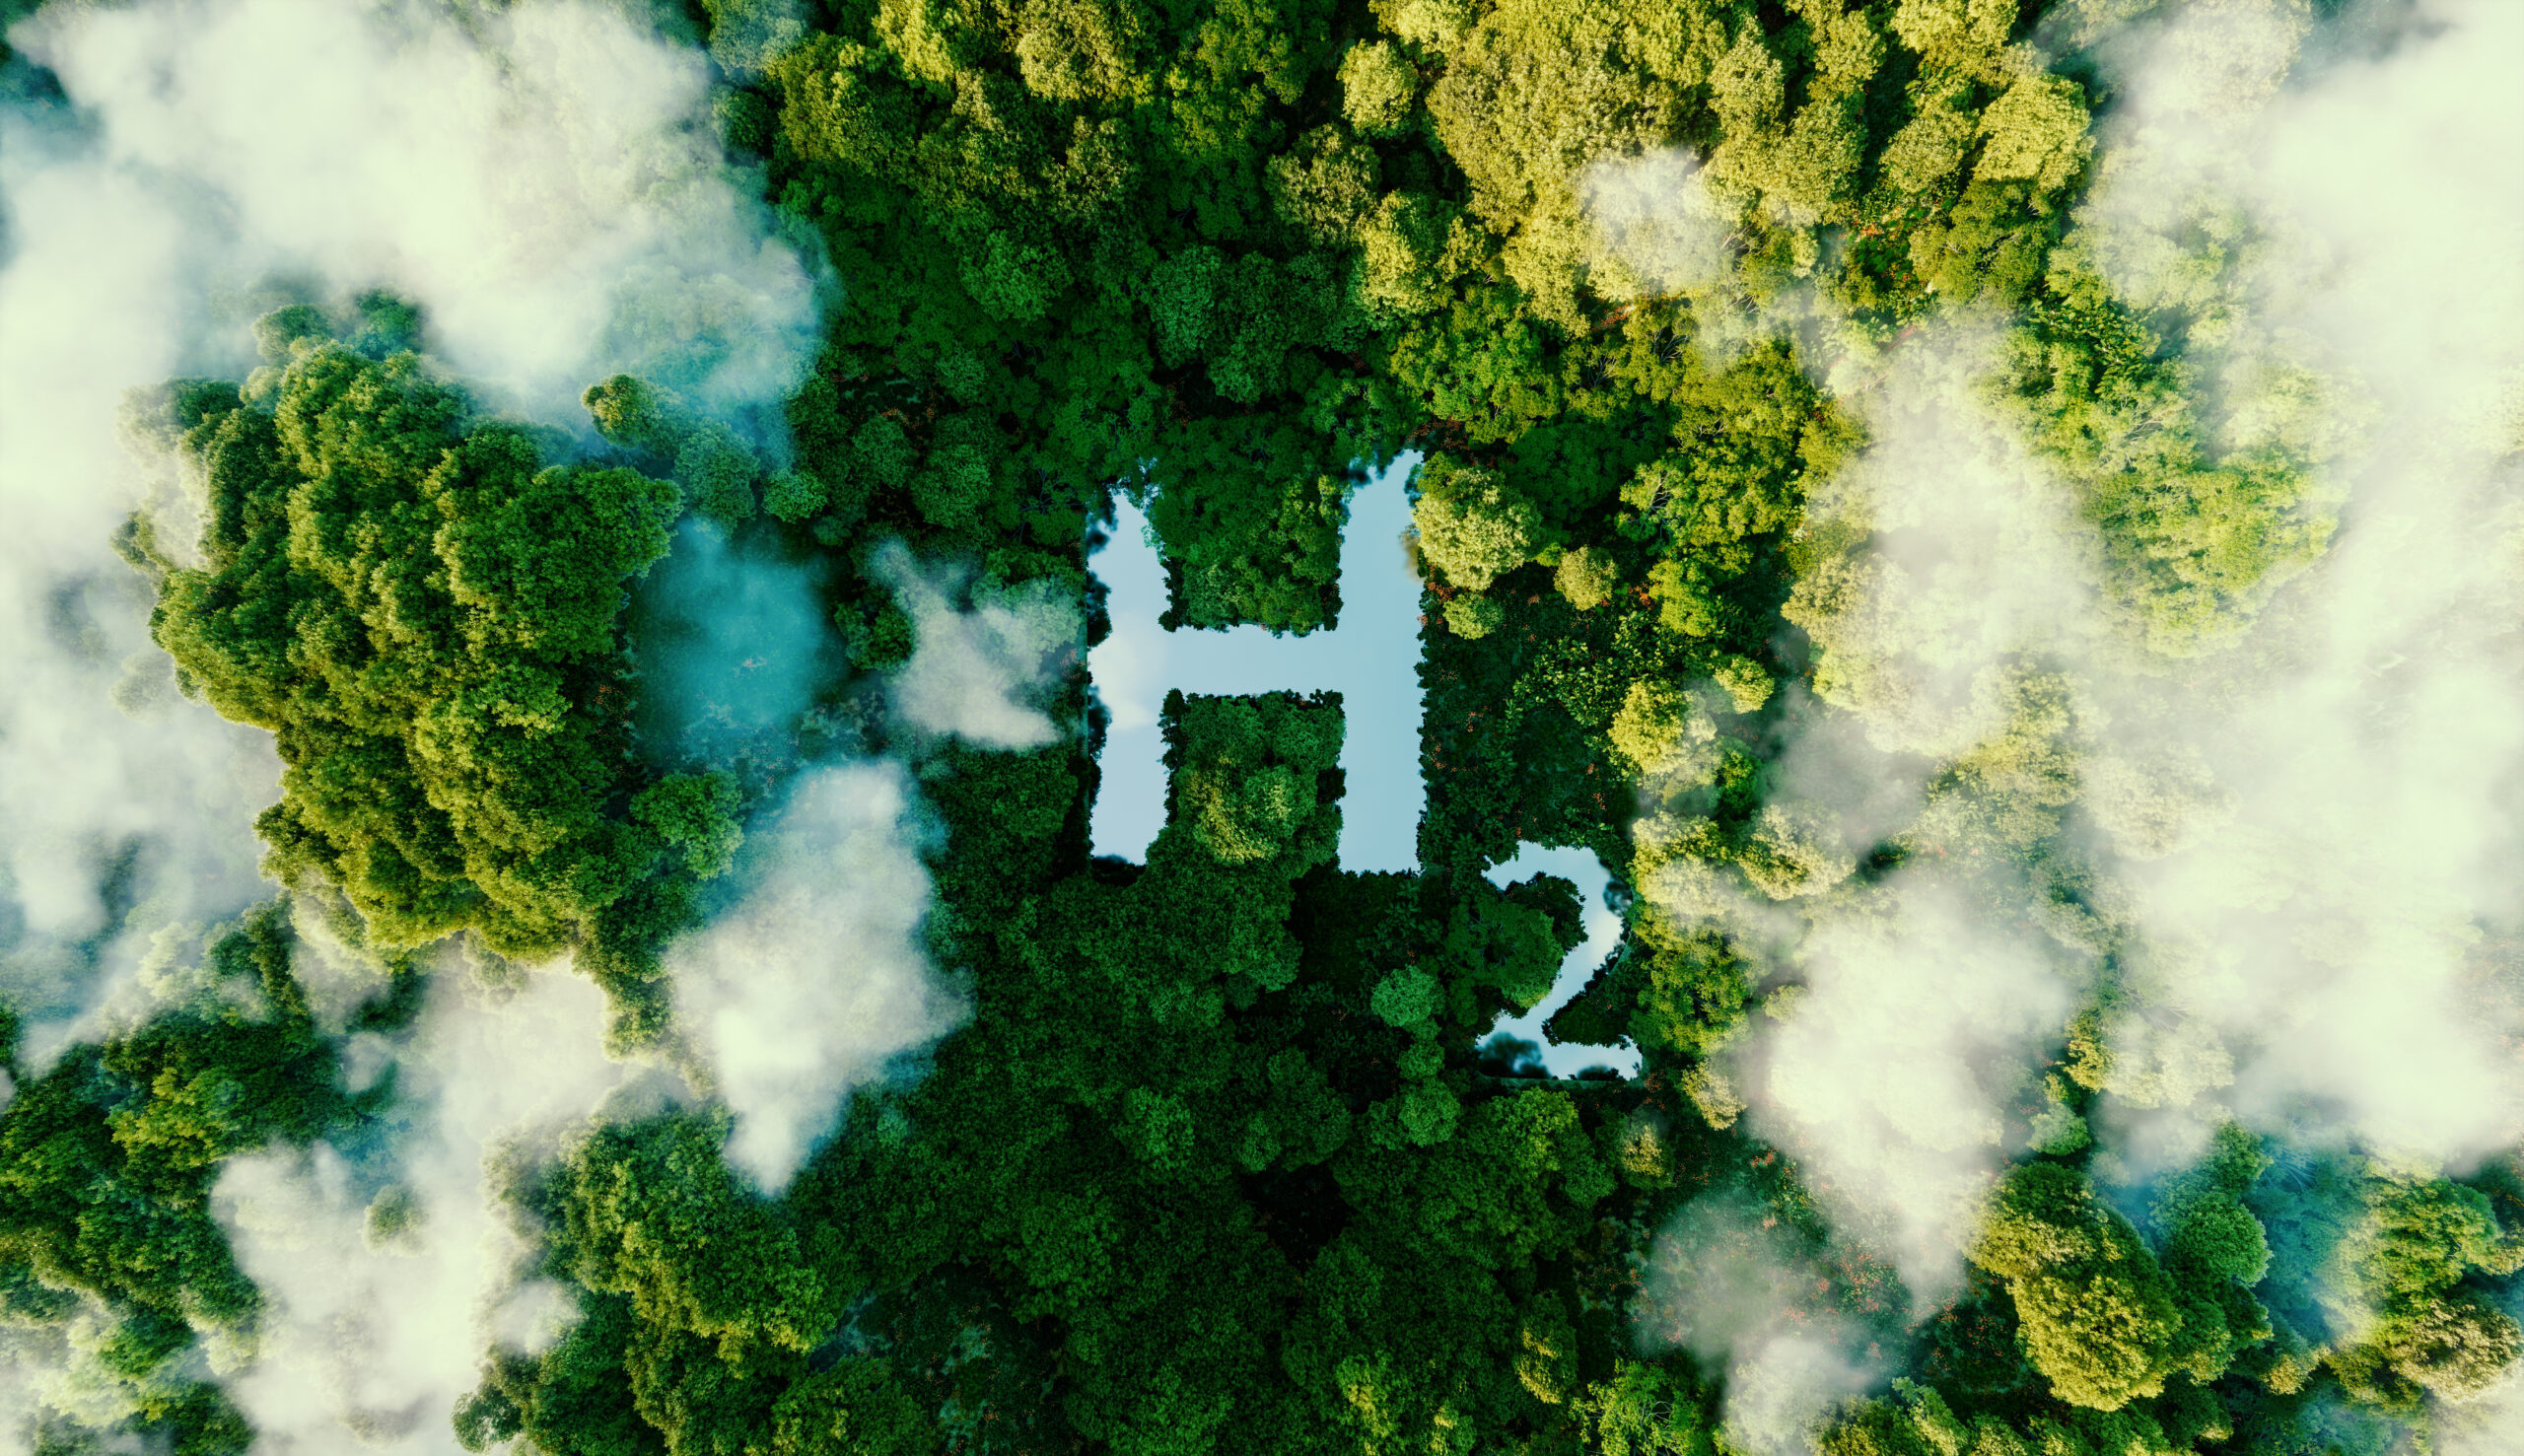 Vista de cima de um lago no formato de H2, simbolizando hidrogênio verde. Imagem feita por iA.